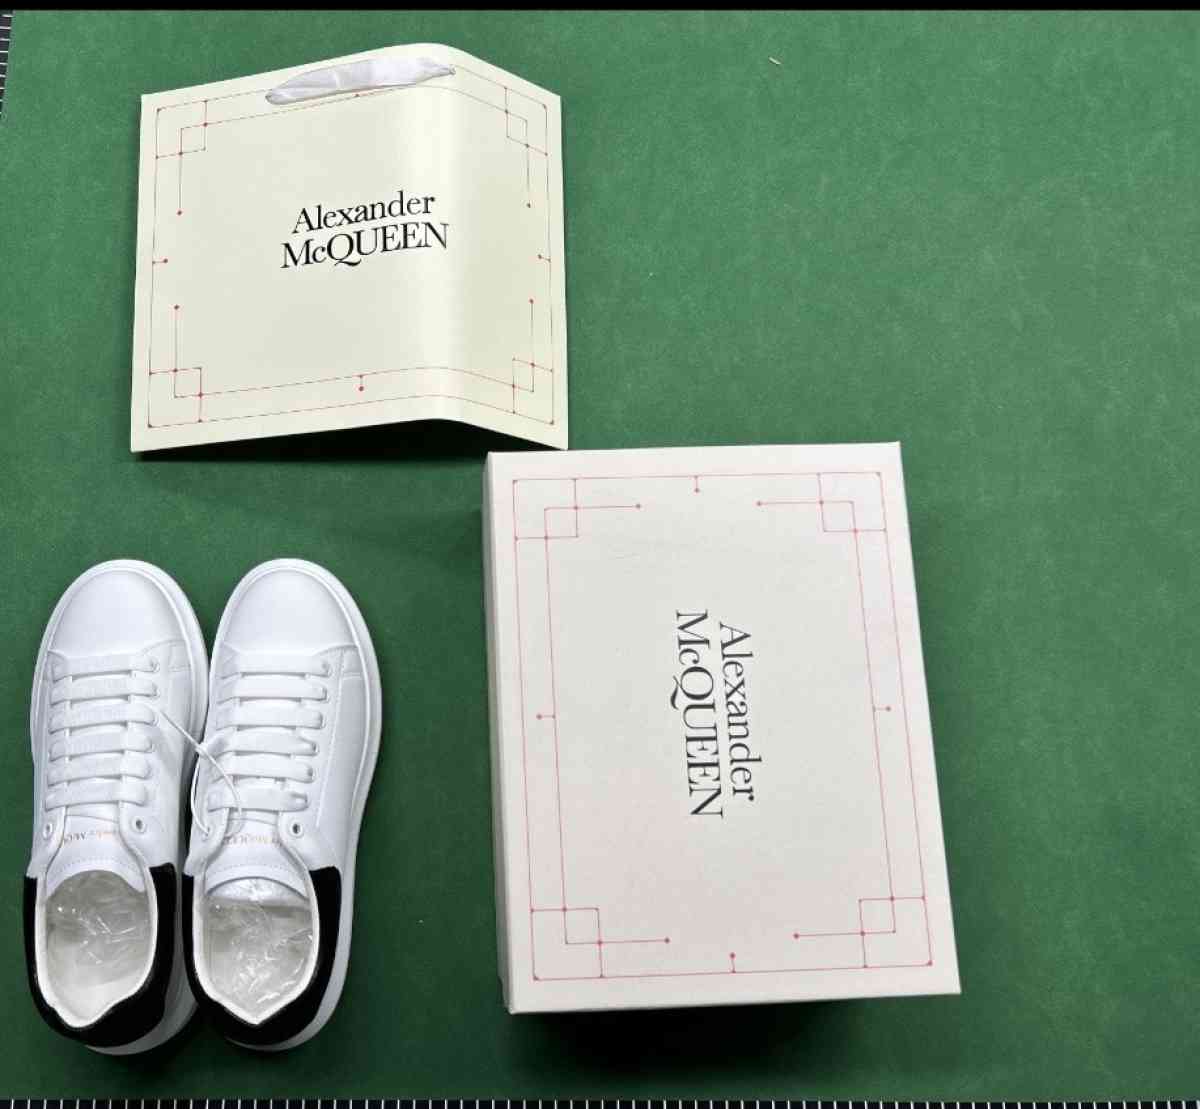 new Alexander McQueen shoes